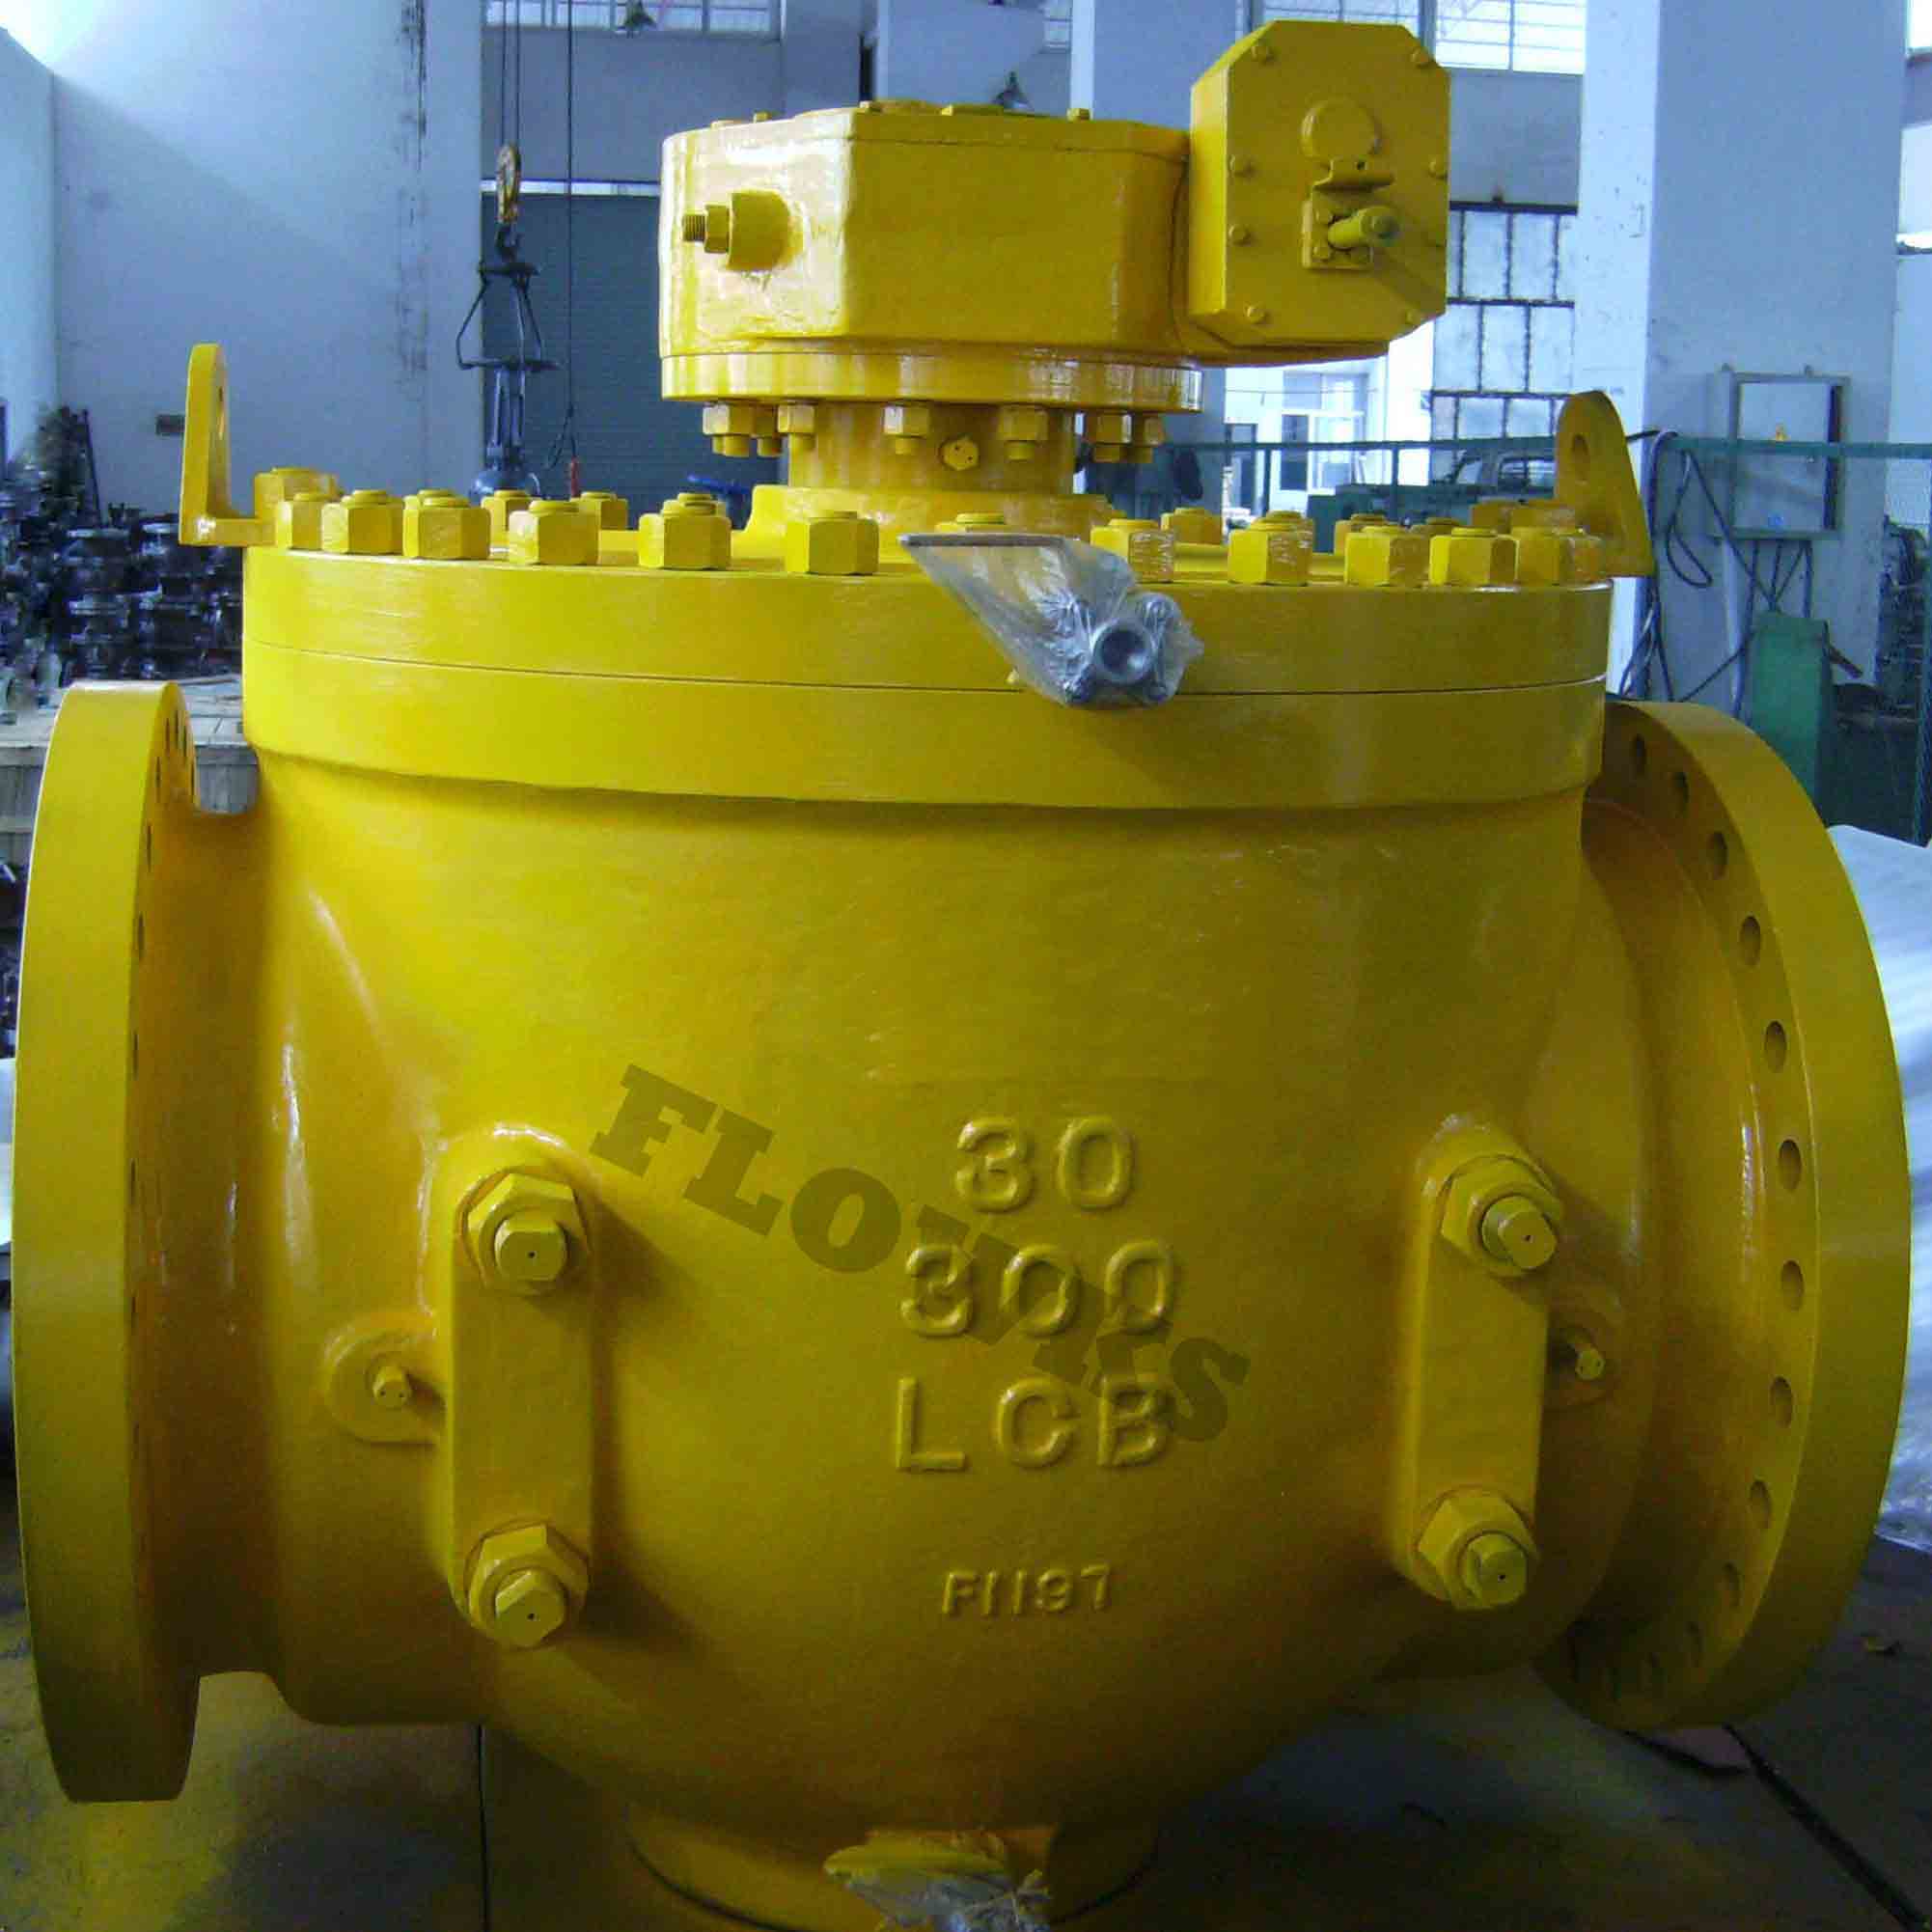 30"-300Lb top entry ball valve